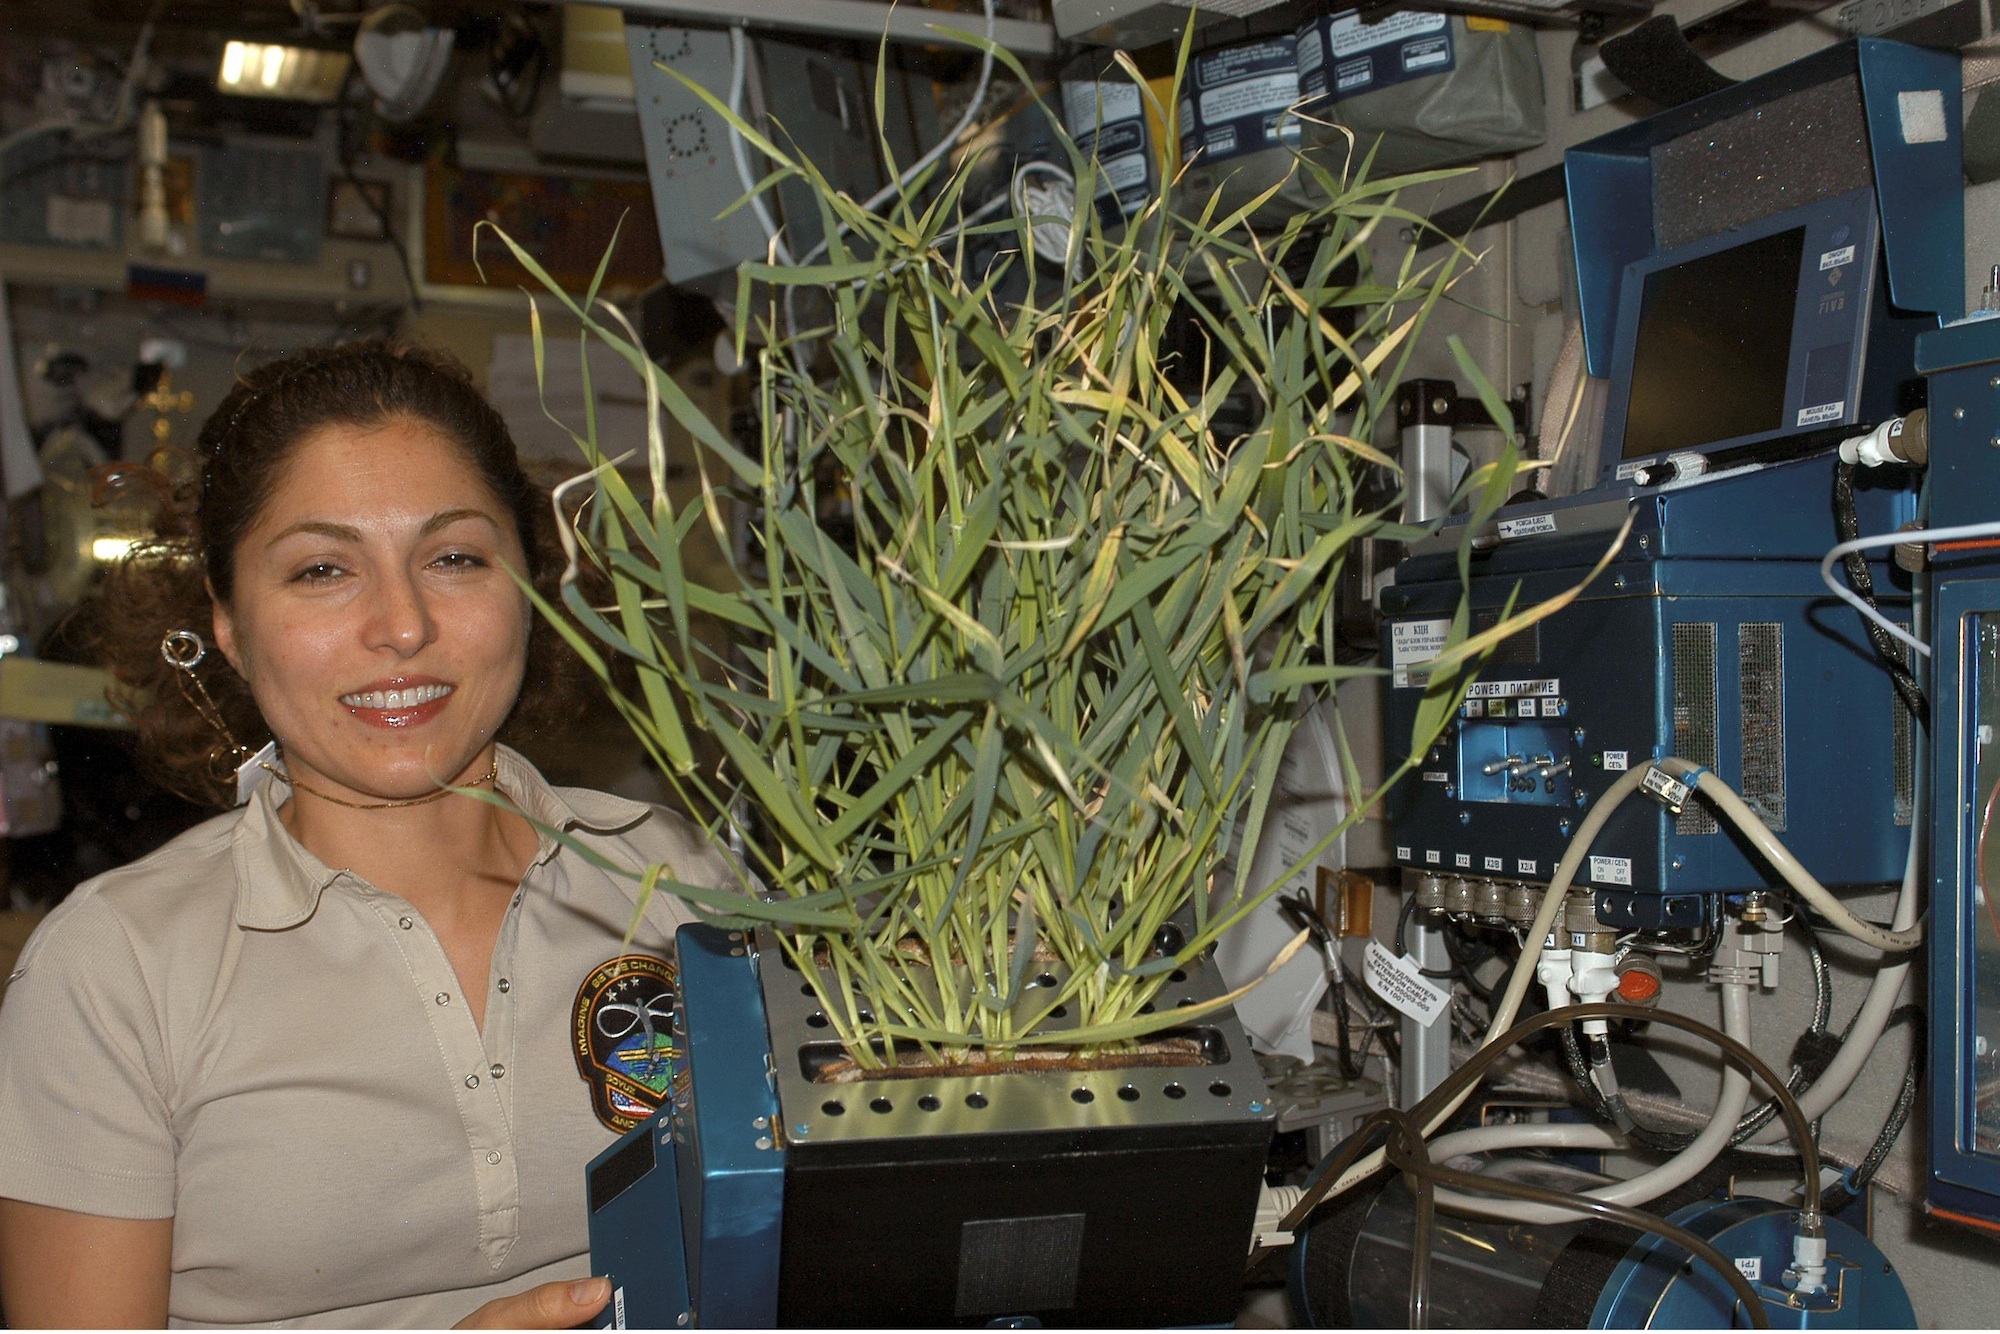 Первый овощ выращенный в космосе. Оранжерея Veggie МКС. Опыты с растениями на МКС (Международная Космическая станция). Космическая оранжерея МКС. Растения на космической станции.